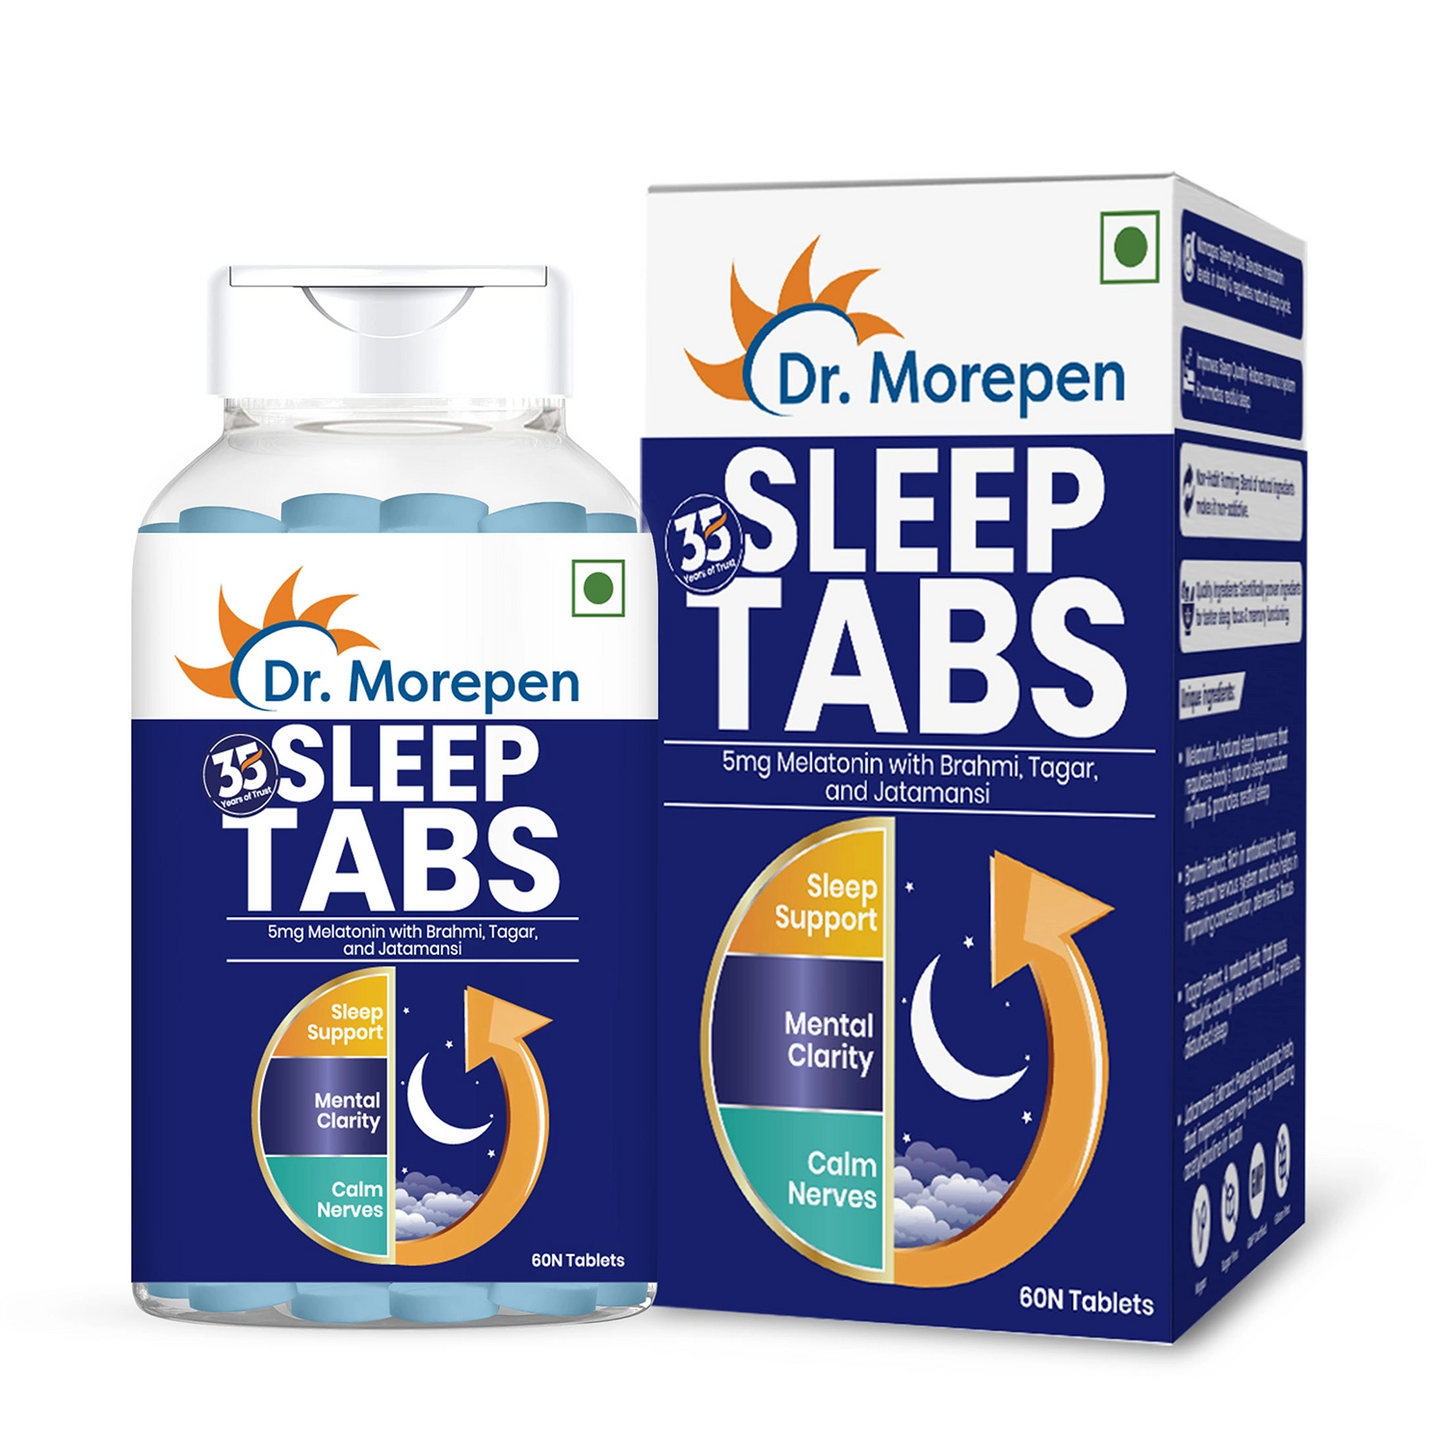 Sleep Tablets For Men & Women (60 Tablets) - For Stress Free Sleep & Calmness